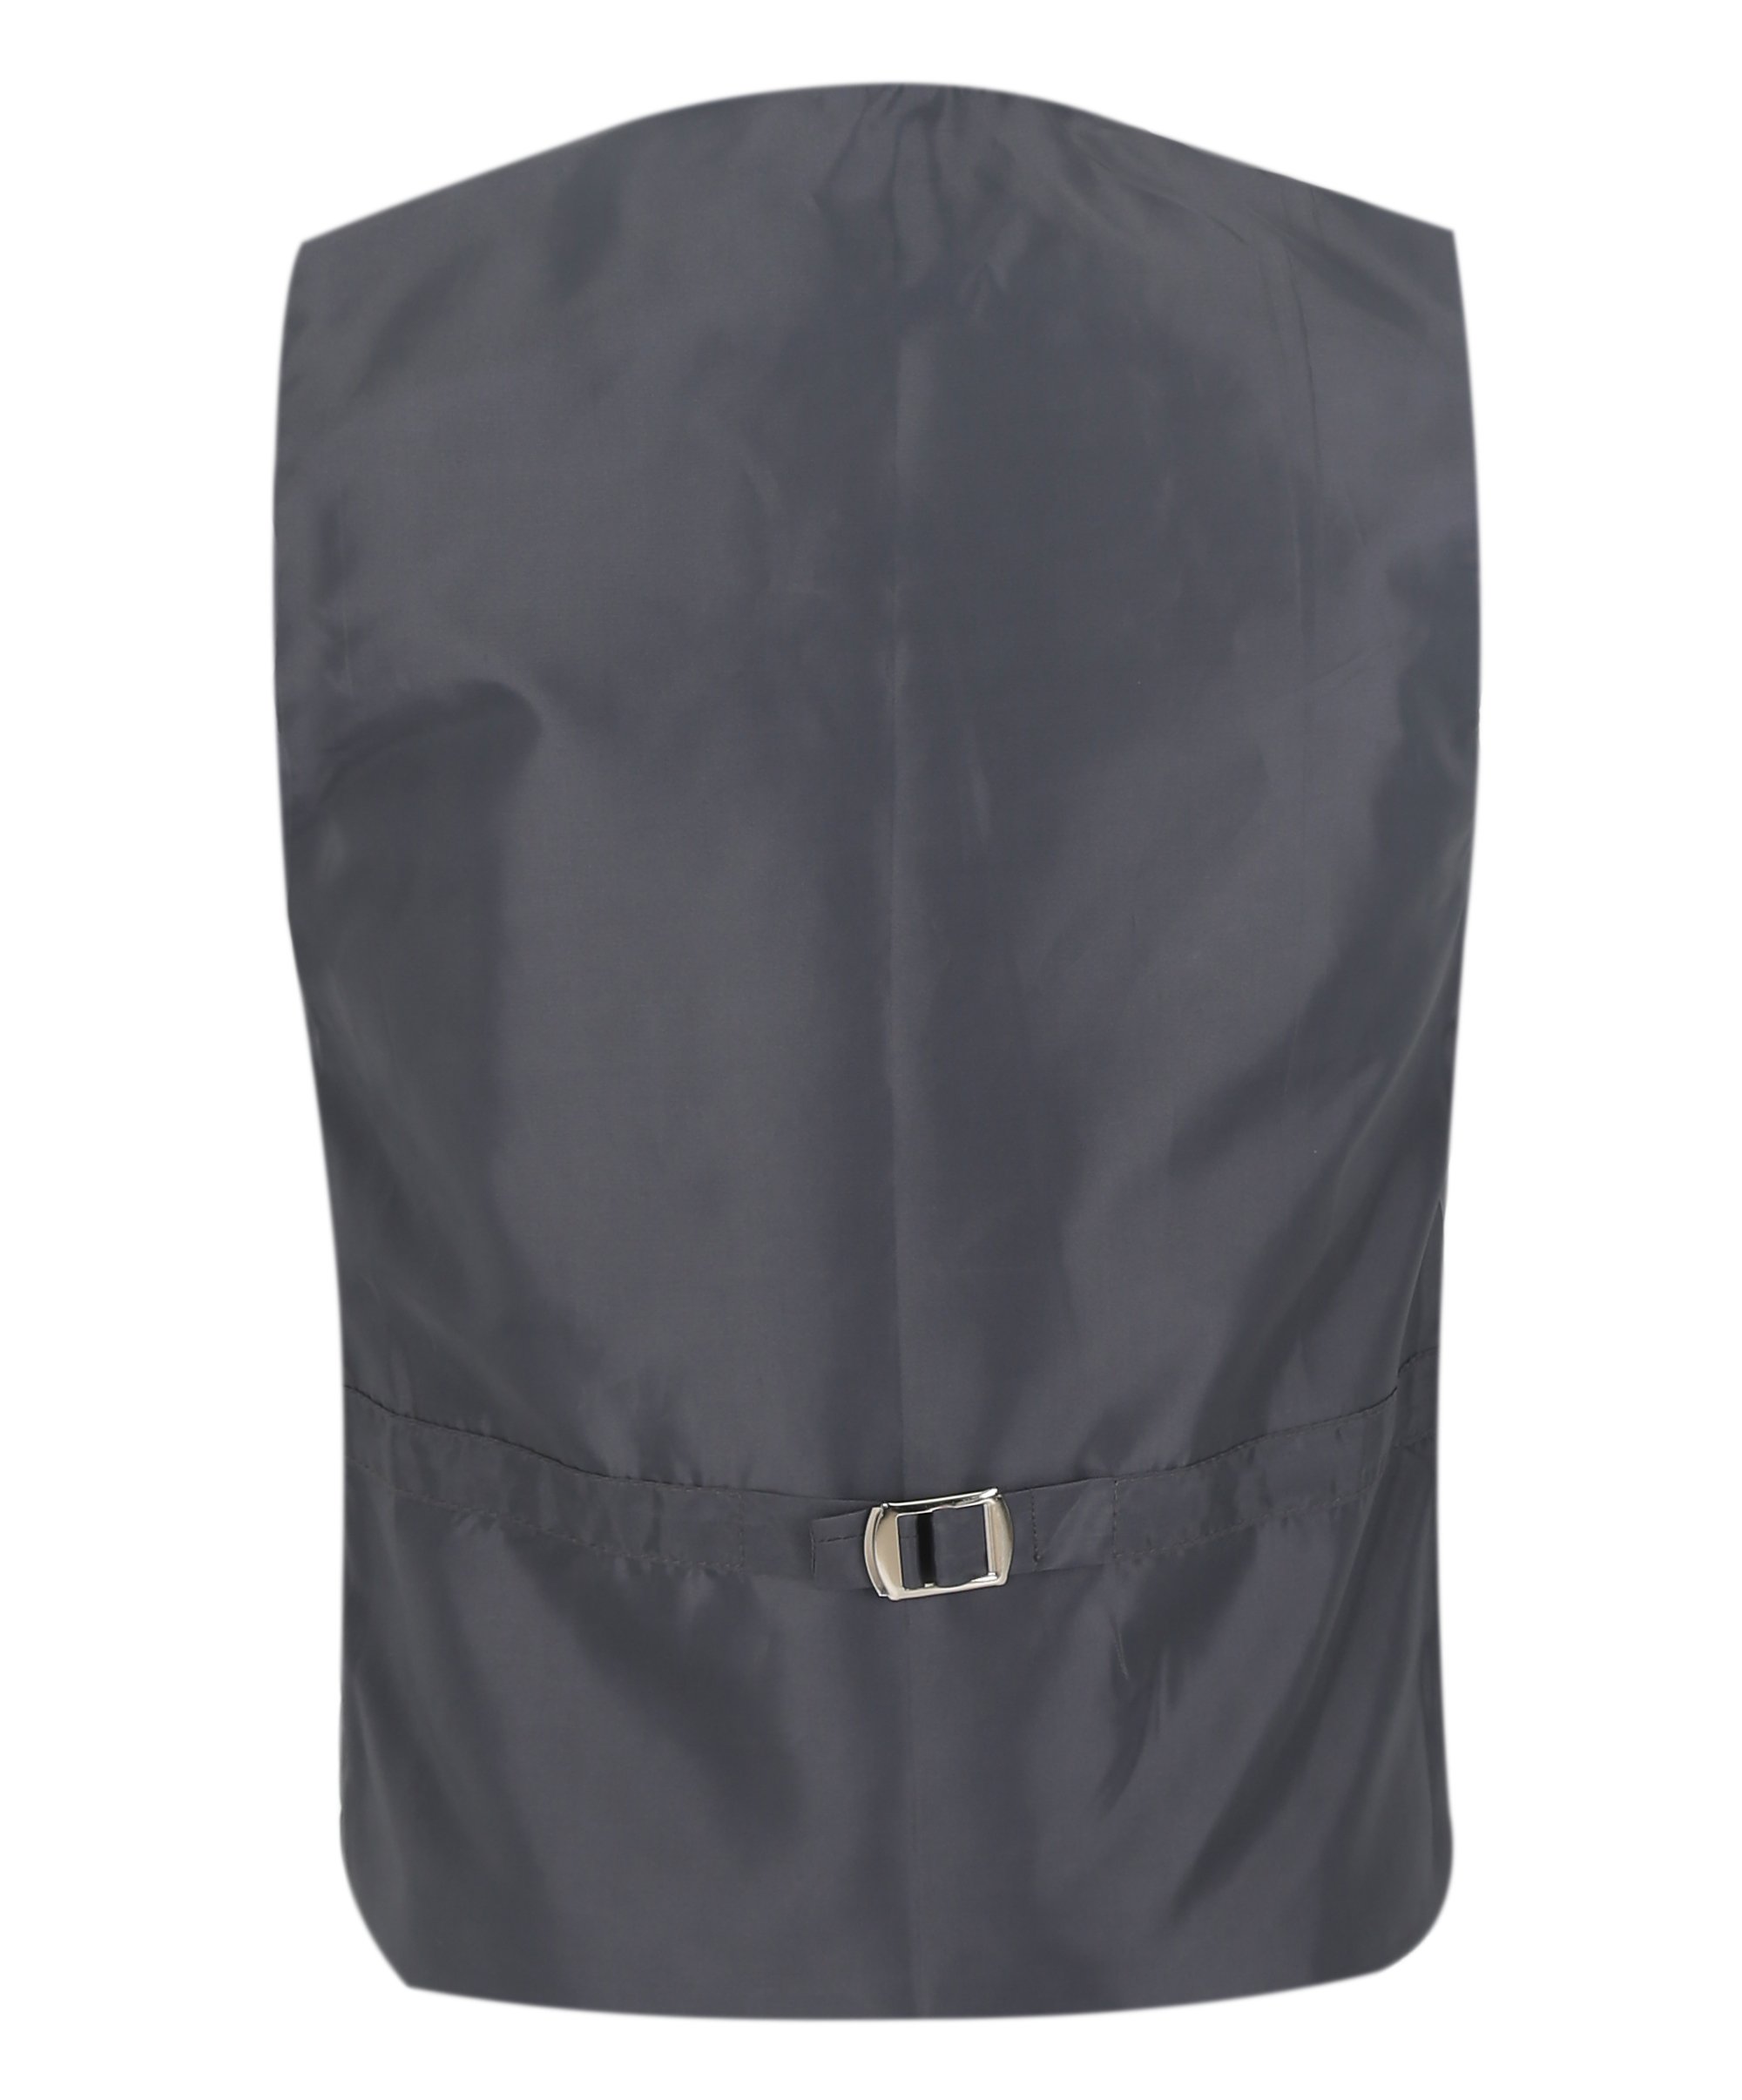 Boys Herringbone Tweed Waistcoat Suit Set - Dark Grey